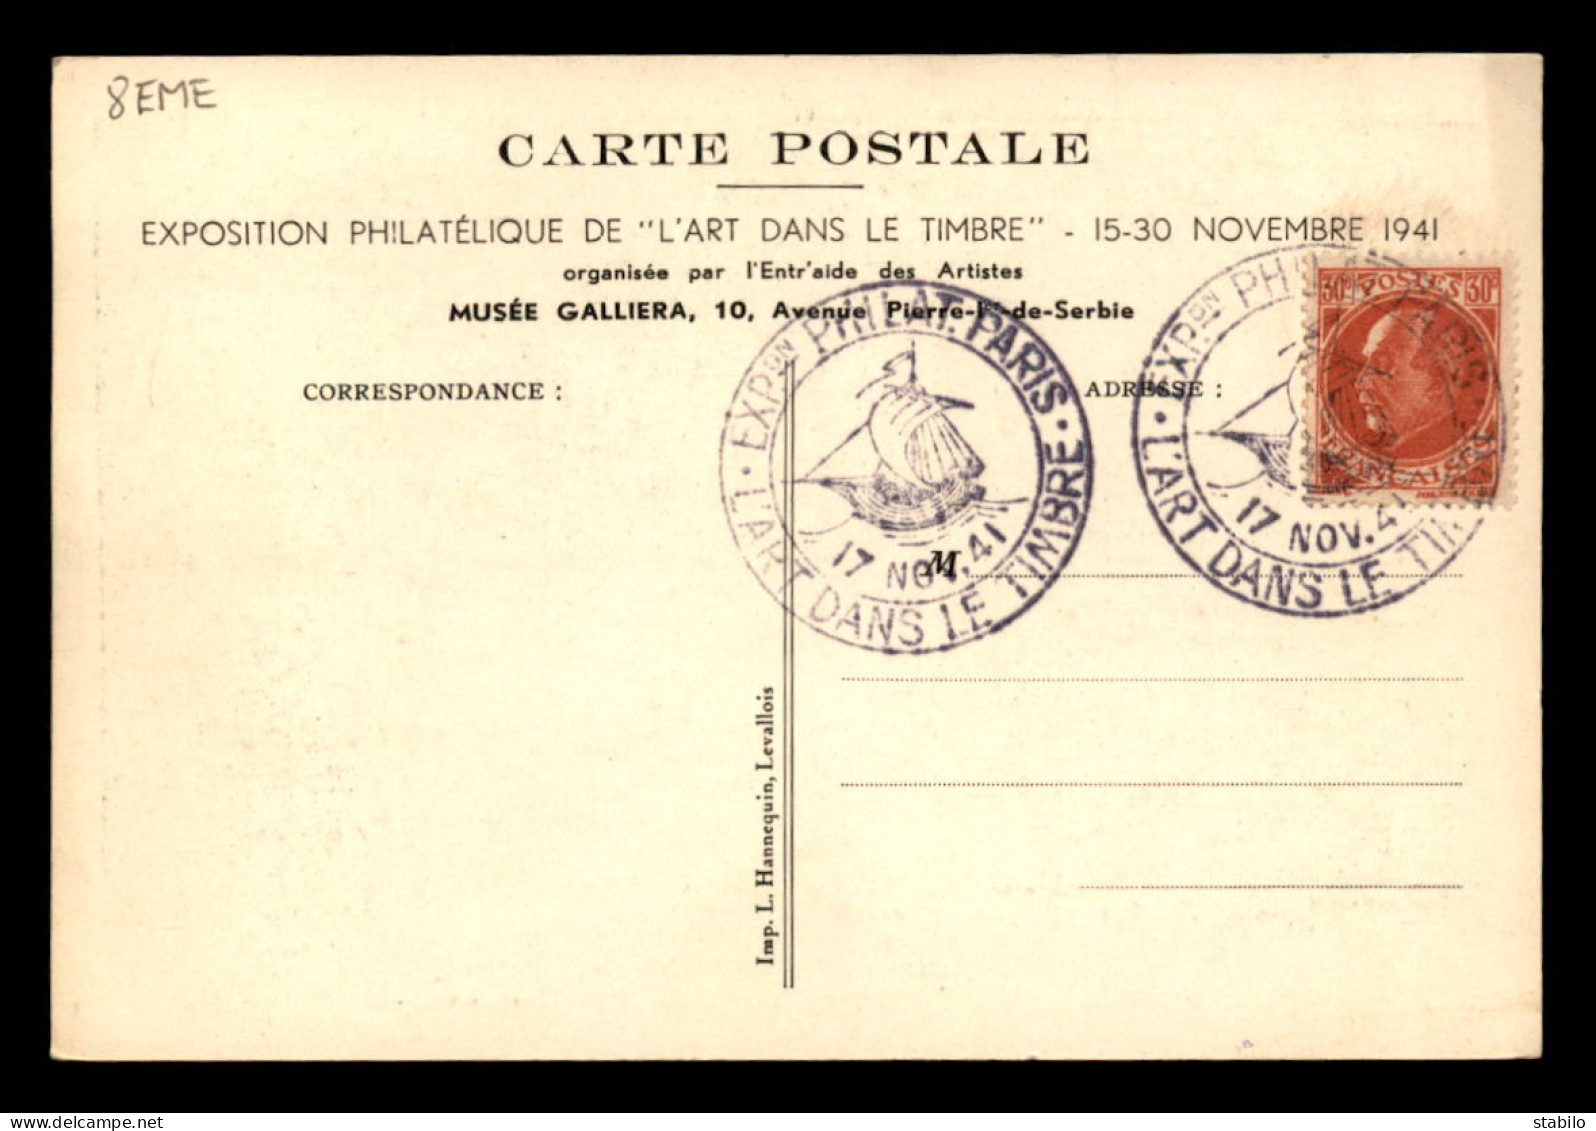 75 - PARIS 8EME - EXPOSITION PHILATELIQUE 15-30 NOVEMBRE 1941 - GRAVURE SUR BOIS D'EMILE BOIZOT, DESSIN DE P.E. LECOMTE - Paris (08)